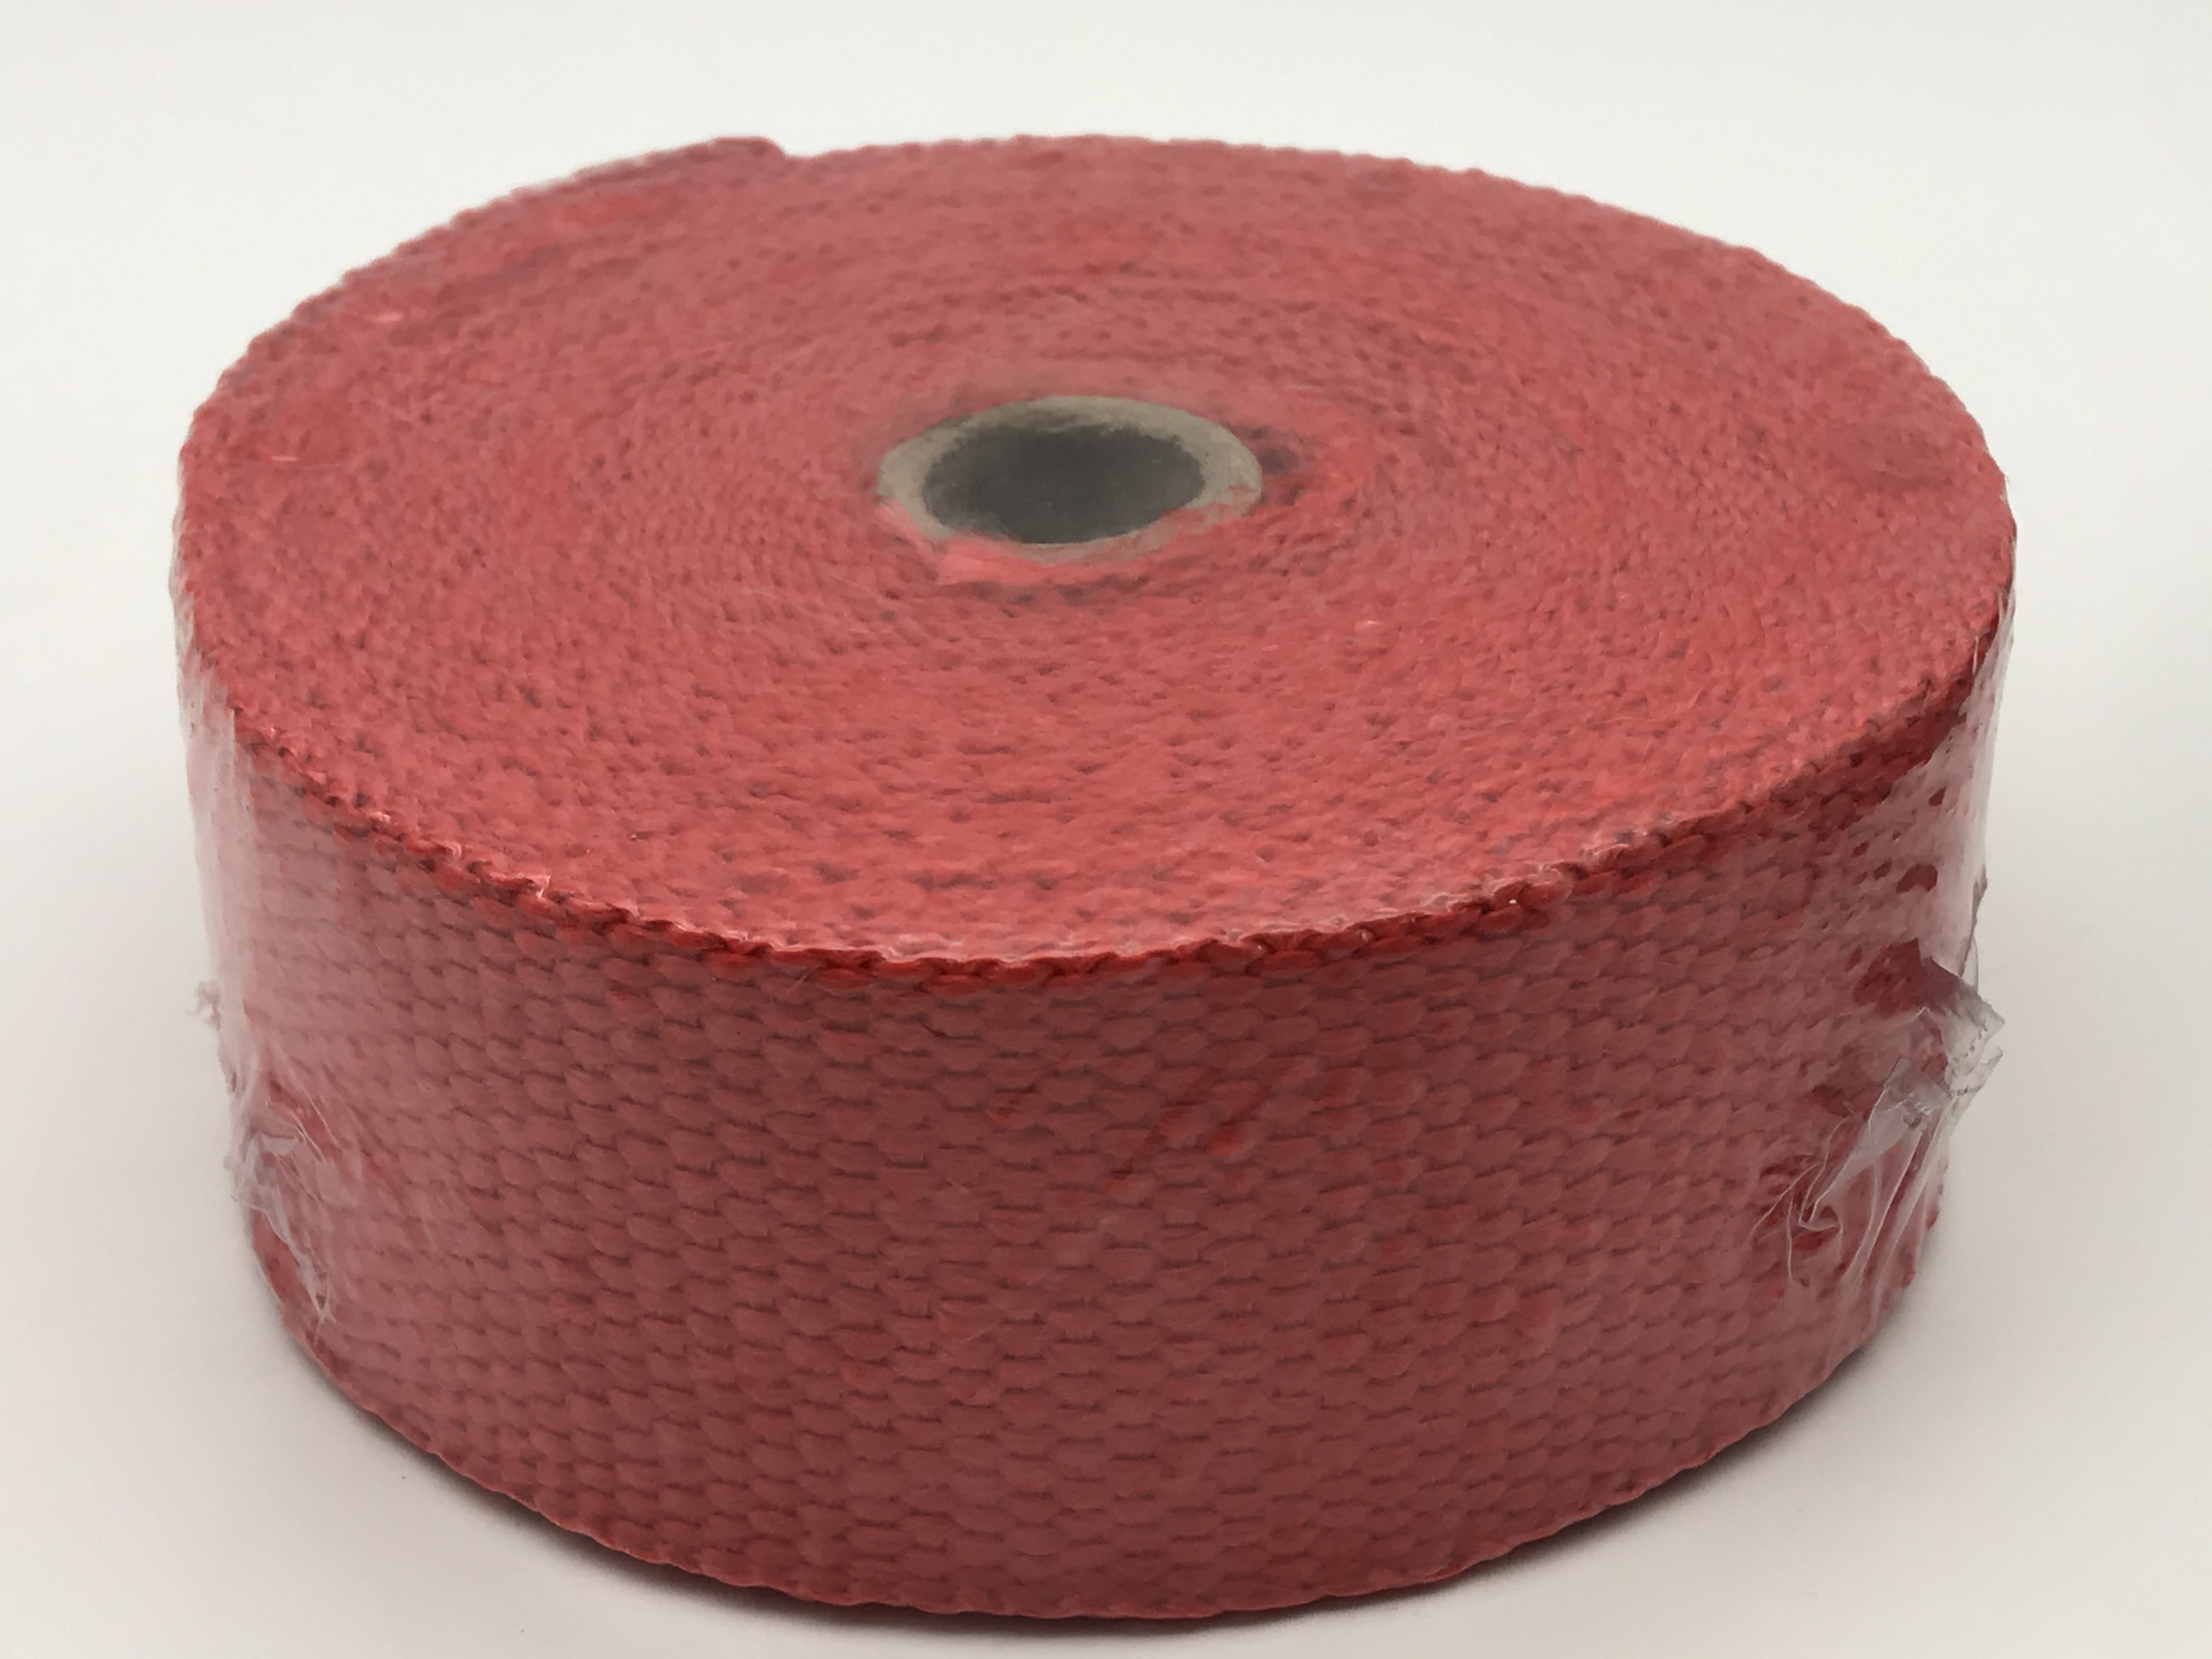 ผ้าพันท่อ ยาว10เมตร สีแดง ผ้าพันท่อ ไอเสีย เฮดเดอร์ความกว้าง 2 นิ้ว ใช้ป้องกันความร้อนที่ท่อไอเสีย